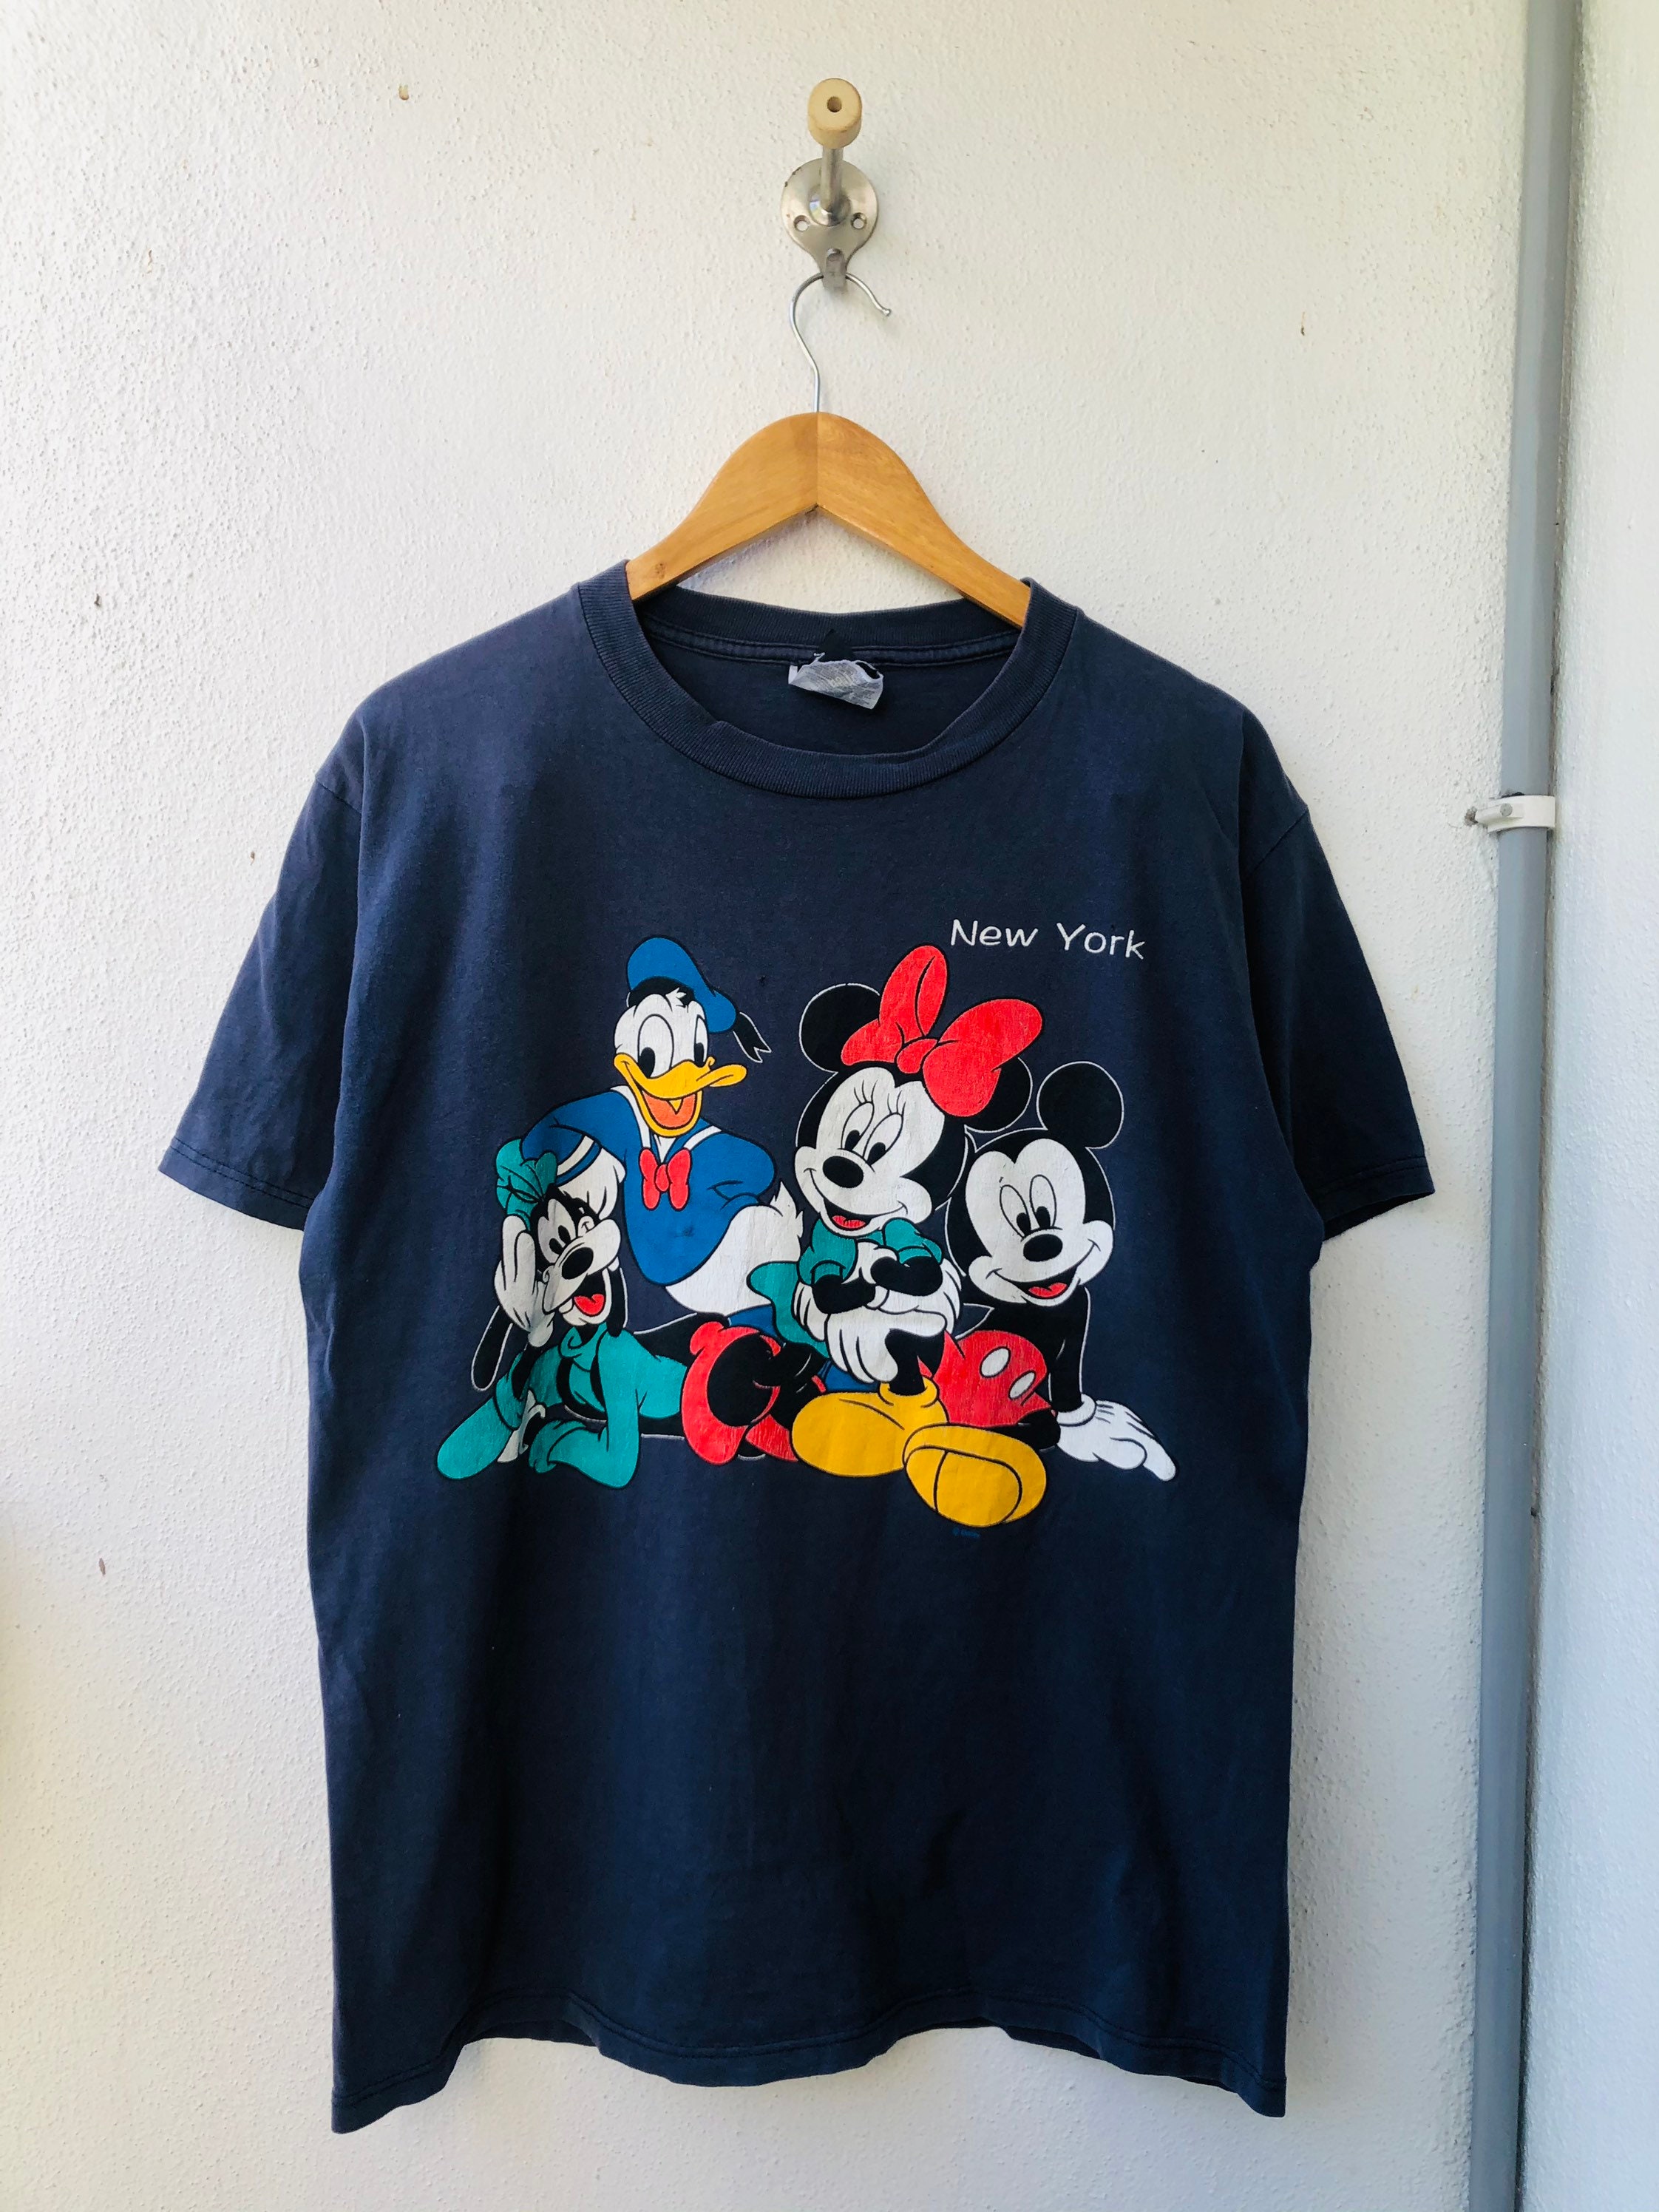 Vintage 80's Mickey Mouse Club Tshirt Taglia Bambini o Adulti Xs Abbigliamento Abbigliamento unisex bimbi Top e magliette T-shirt T-shirt con disegni 